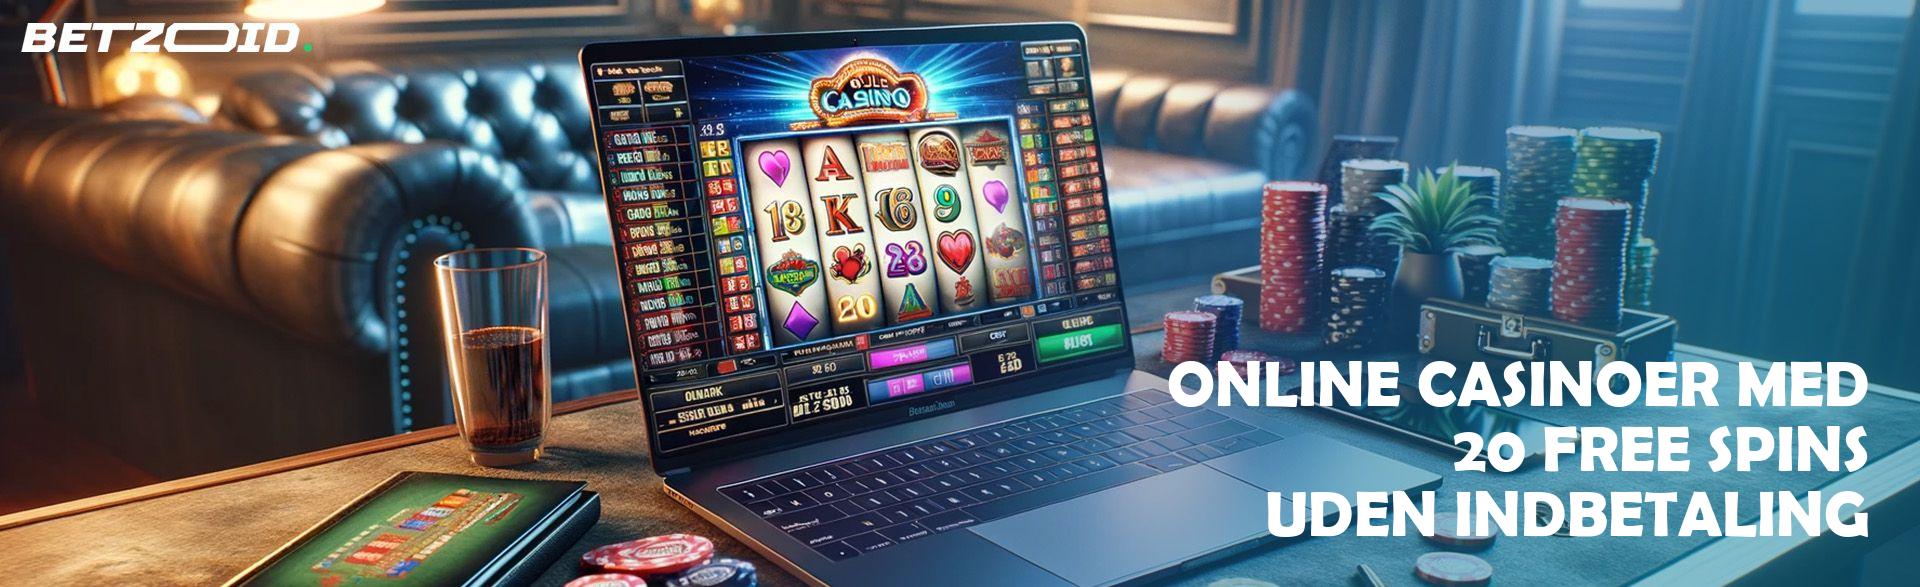 Online Casinoer med 20 Free Spins uden Indbetaling.